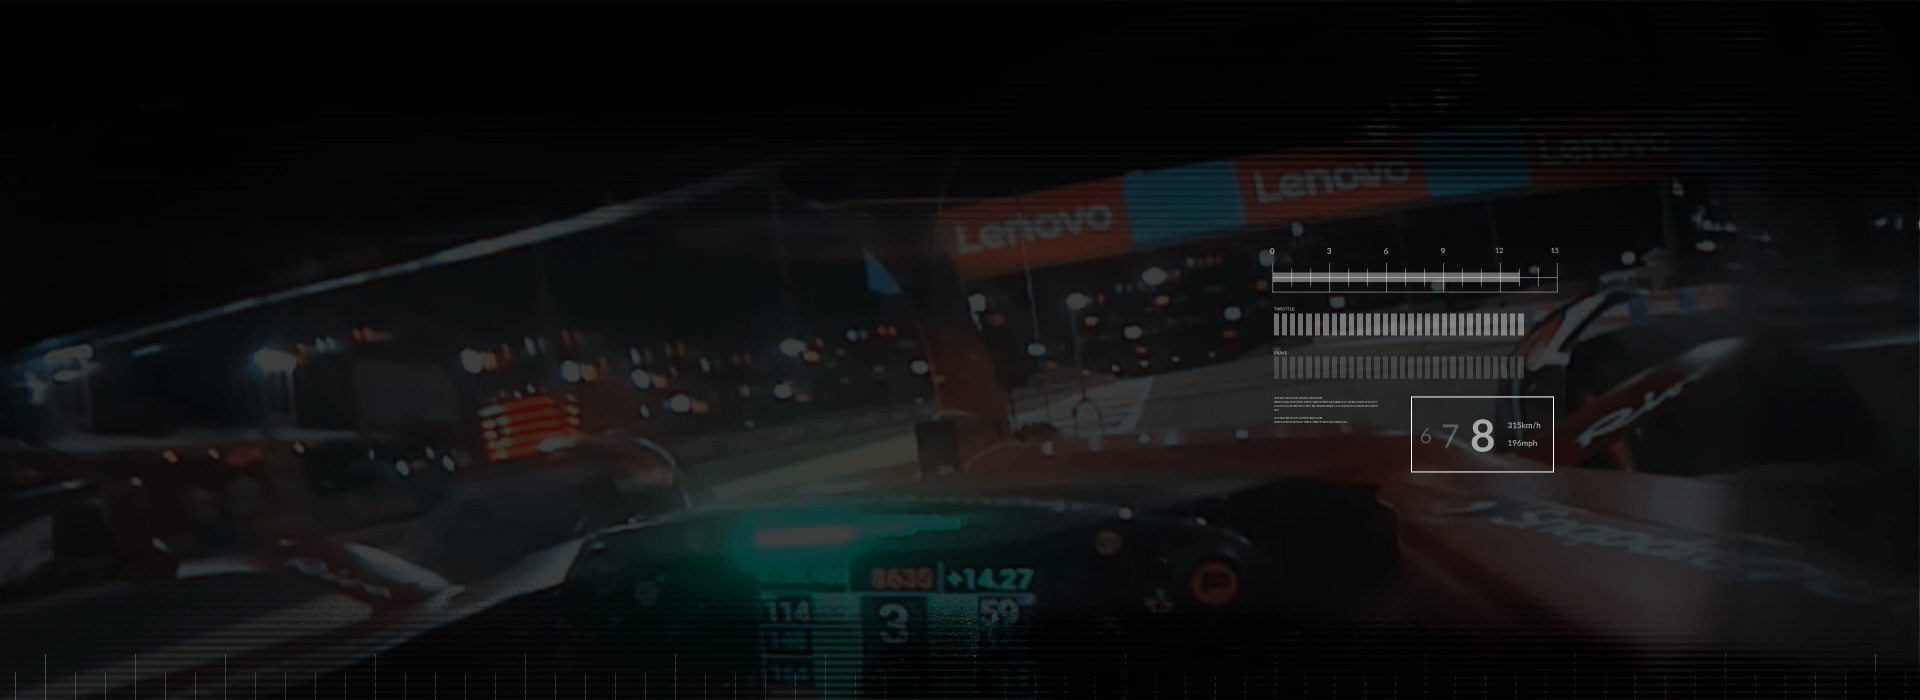 Вид из кабины пилота болида Формулы 1, проезжающего мимо баннеров Lenovo на трассе